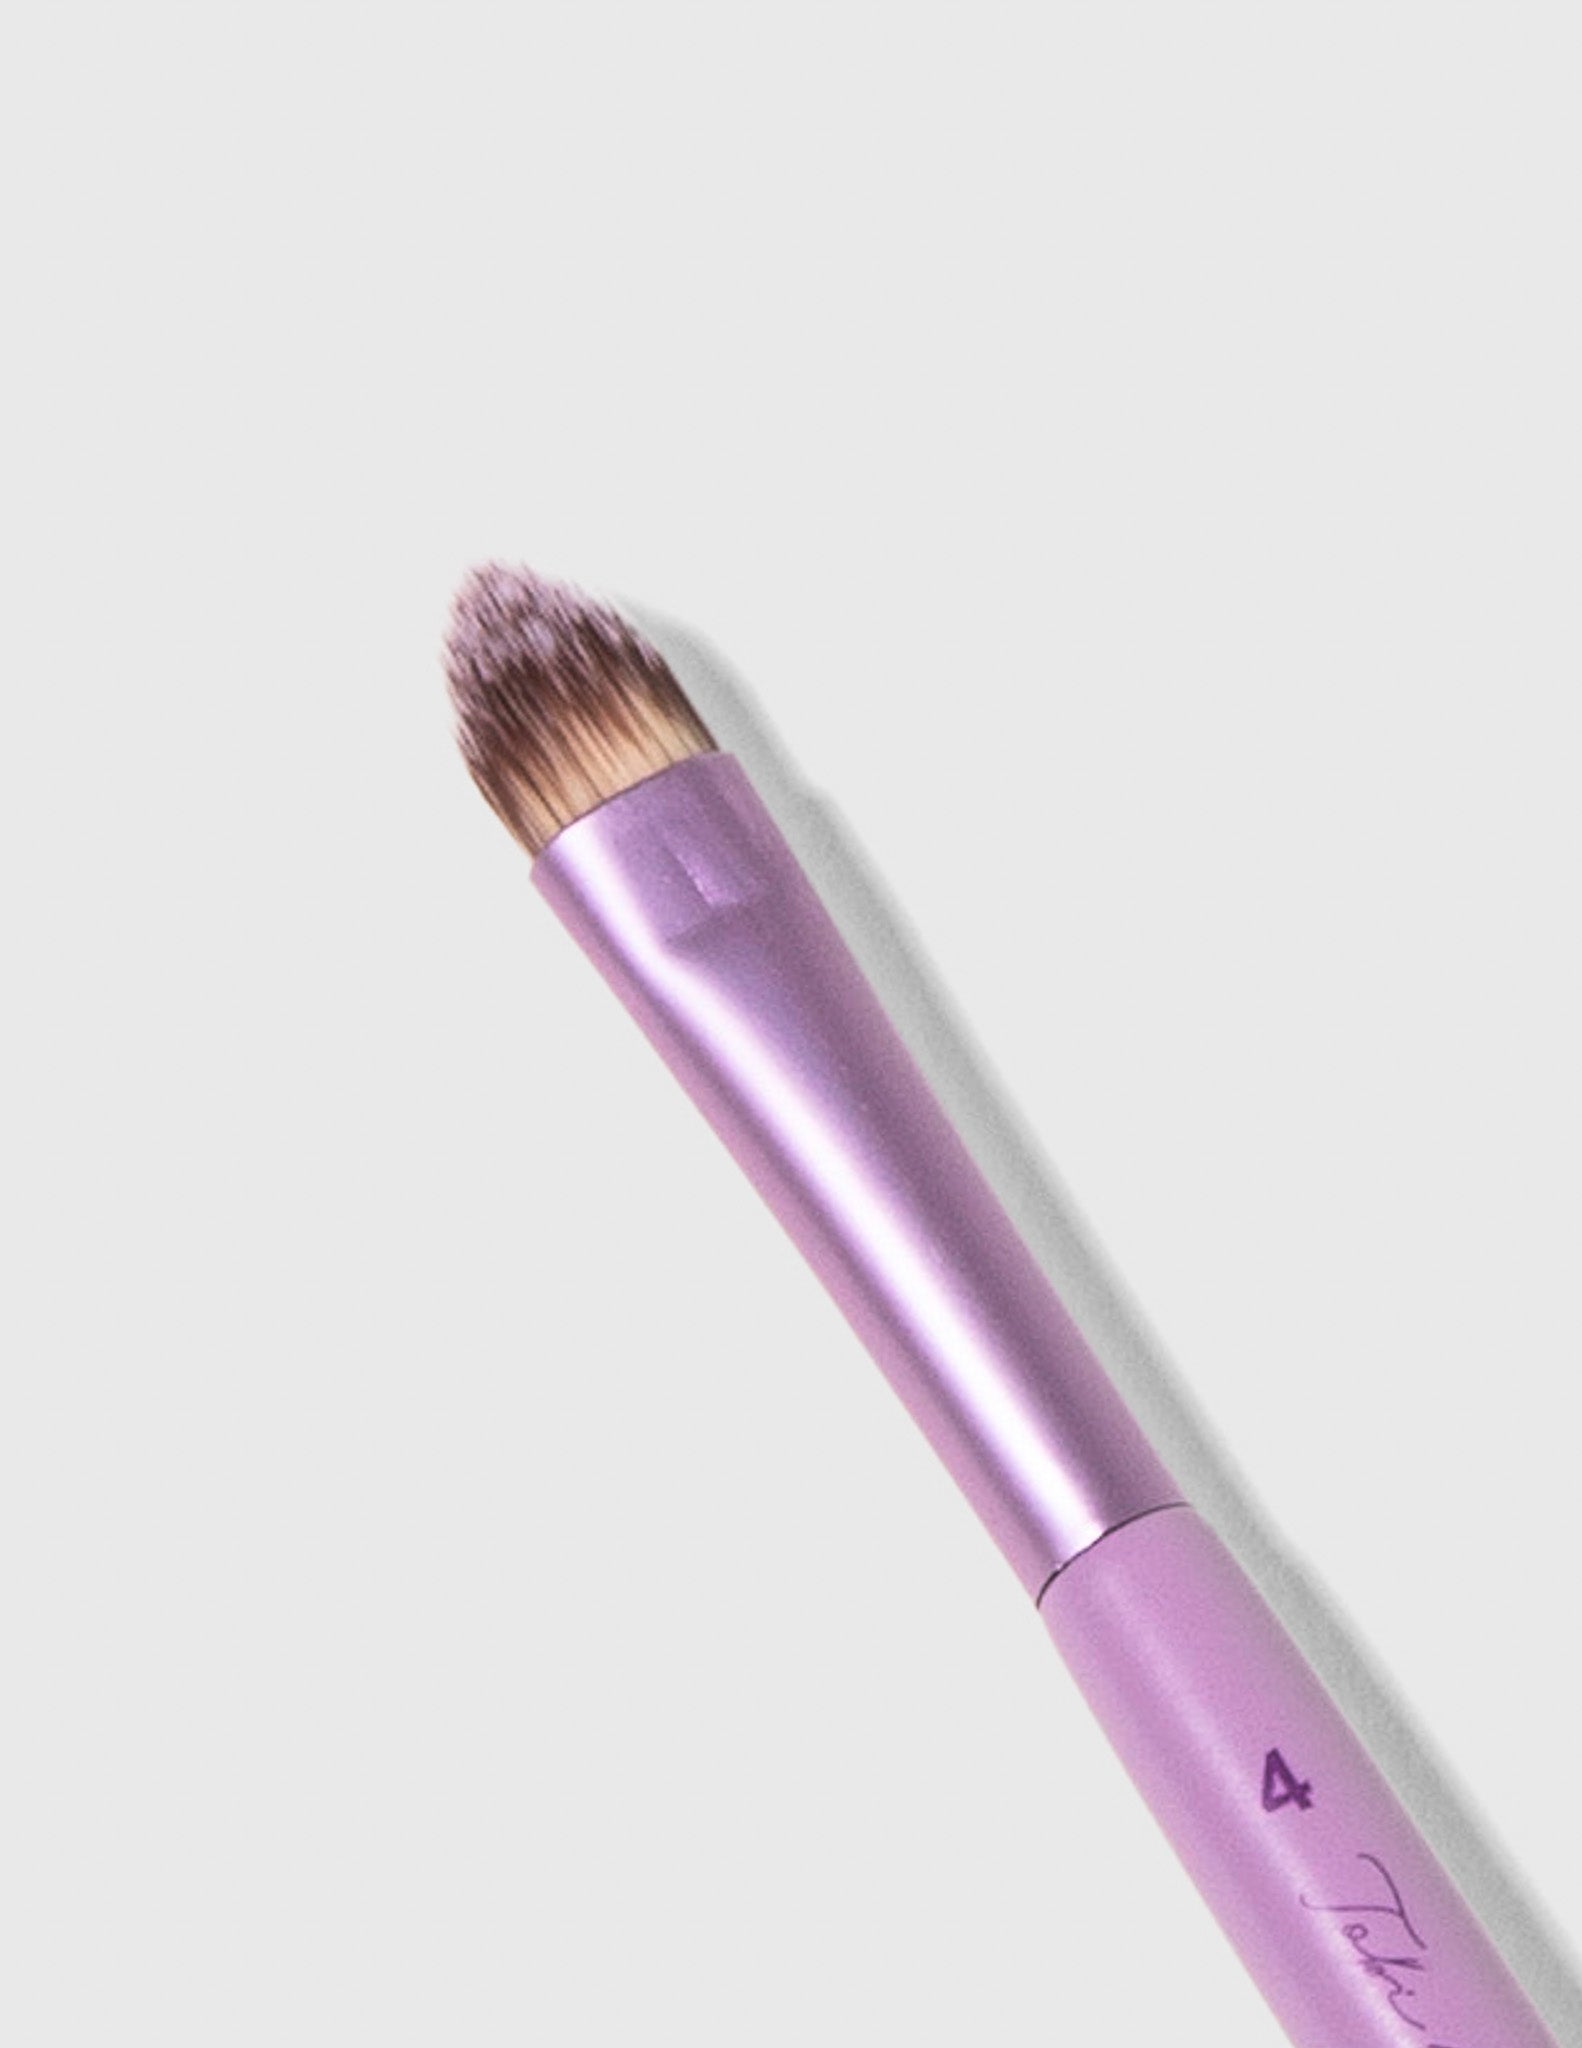 Eyeshadow Flat Makeup Brush - #4 - Trademark Beauty